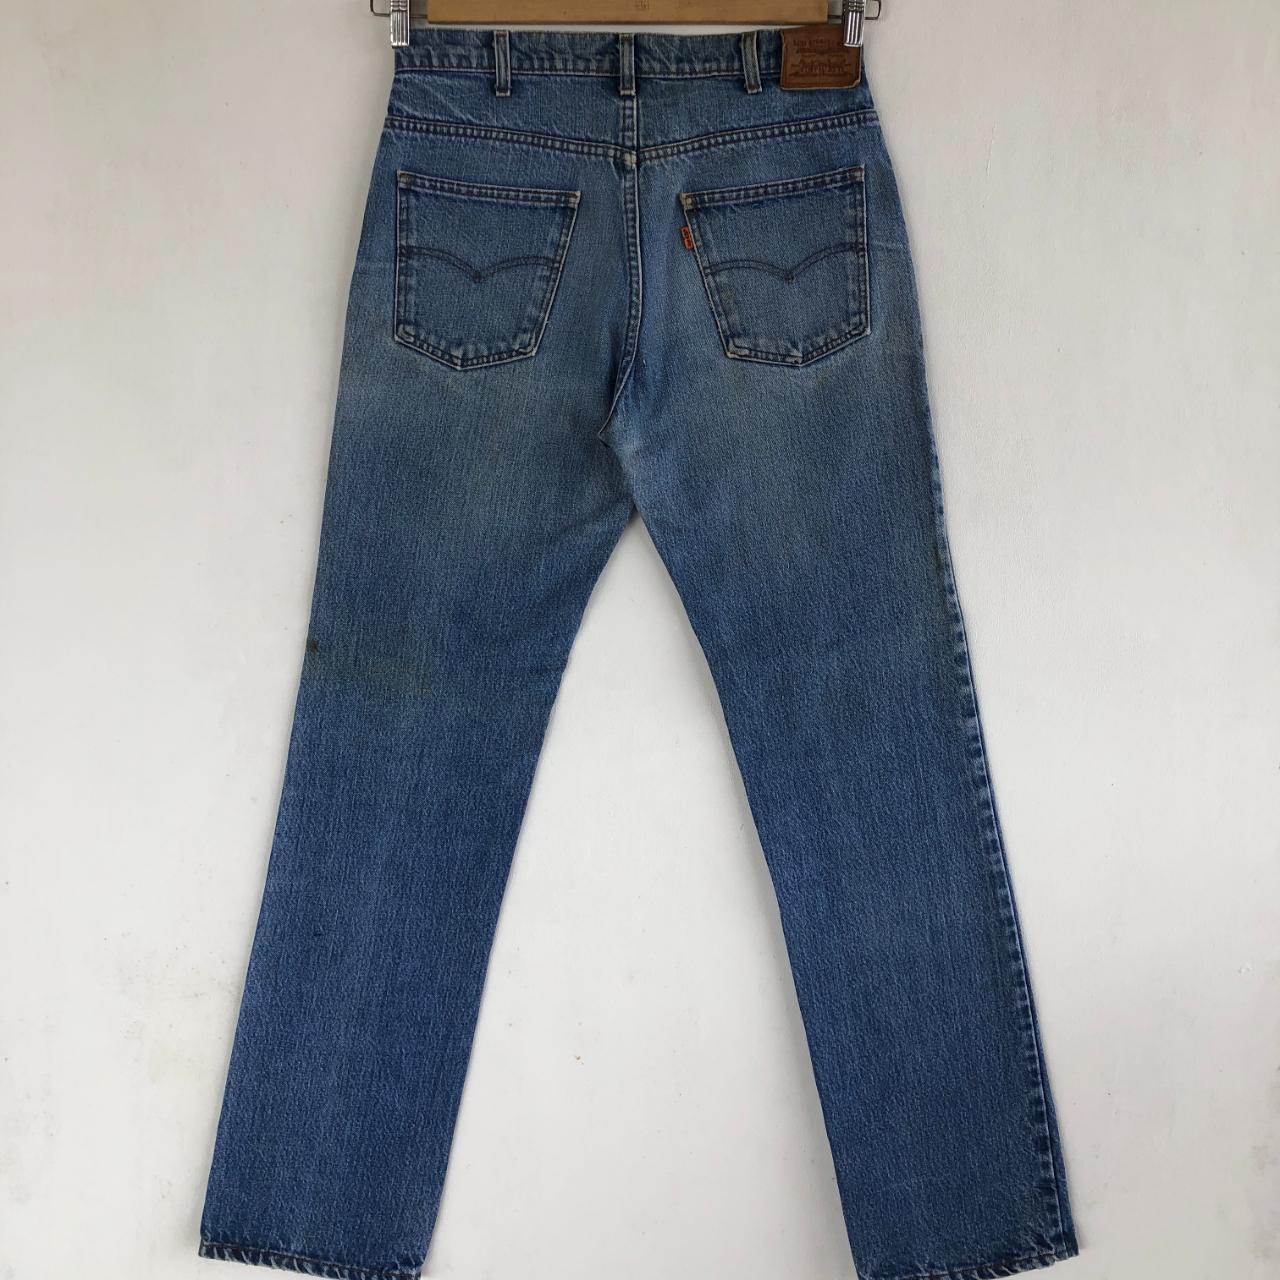 Vintage 70s Levis Jeans Levis 564 Denim Levis Orange... - Depop